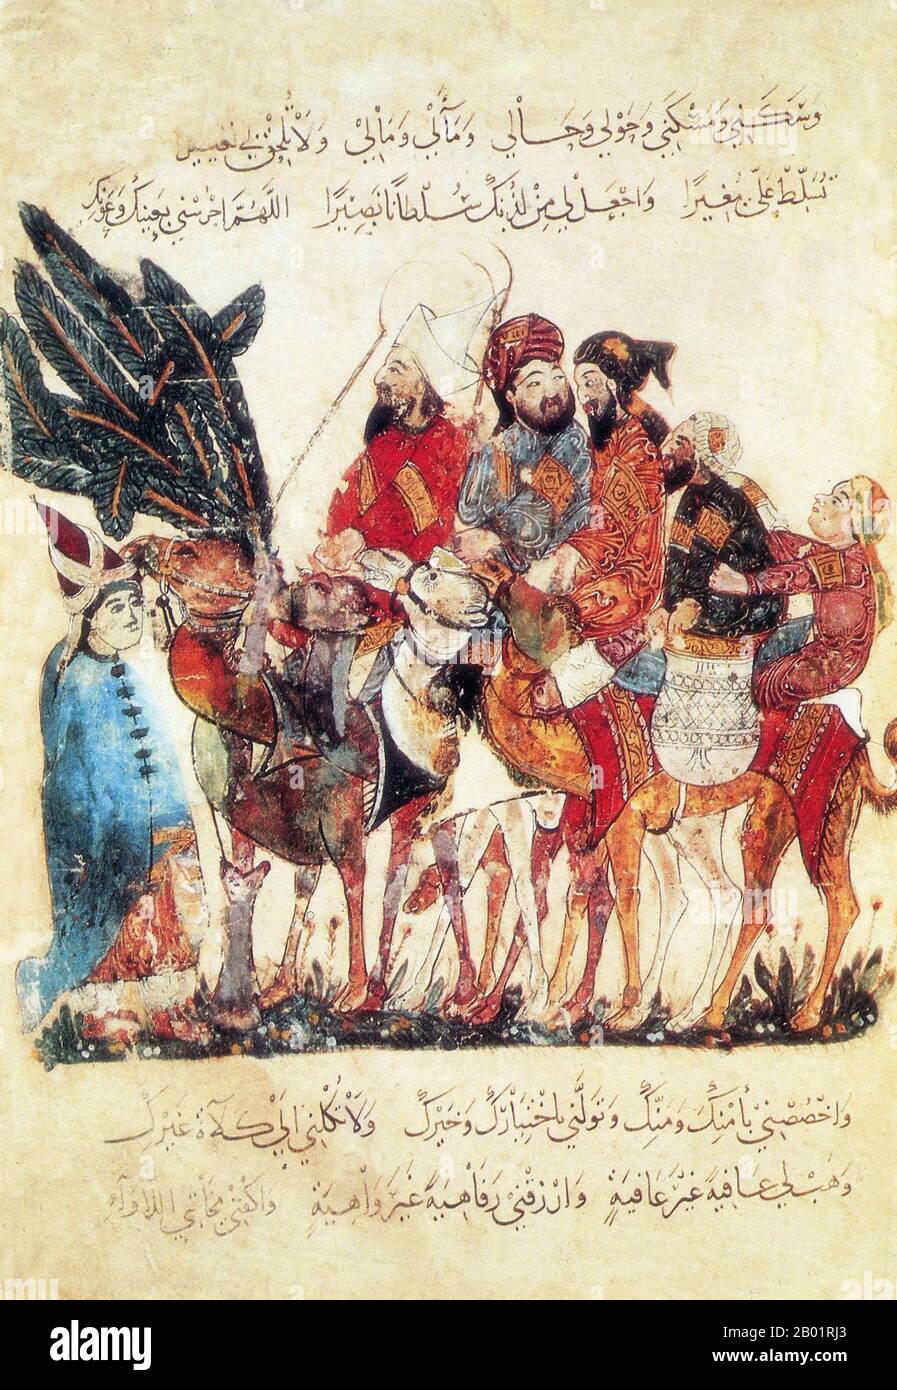 Iraq: Mercanti in una carovana di cammello. Pittura in miniatura di Yahya ibn Mahmud al-Wasiti, 1237 d.C. Yahyâ ibn Mahmûd al-Wâsitî è stato un artista arabo islamico del XIII secolo. Al-Wasiti è nato a Wasit, nel sud dell'Iraq. Era noto per le sue illustrazioni del Maqam di al-Hariri. I Maqāma (letteralmente "assemblee") sono un genere letterario arabo (originariamente) di prosa rimata con intervalli di poesia in cui la stravaganza retorica è evidente. Si dice che l'autore del X secolo Badī' al-Zaman al-Hamadhāni abbia inventato la forma, che fu estesa da al-Hariri di Bassora nel secolo successivo. Foto Stock